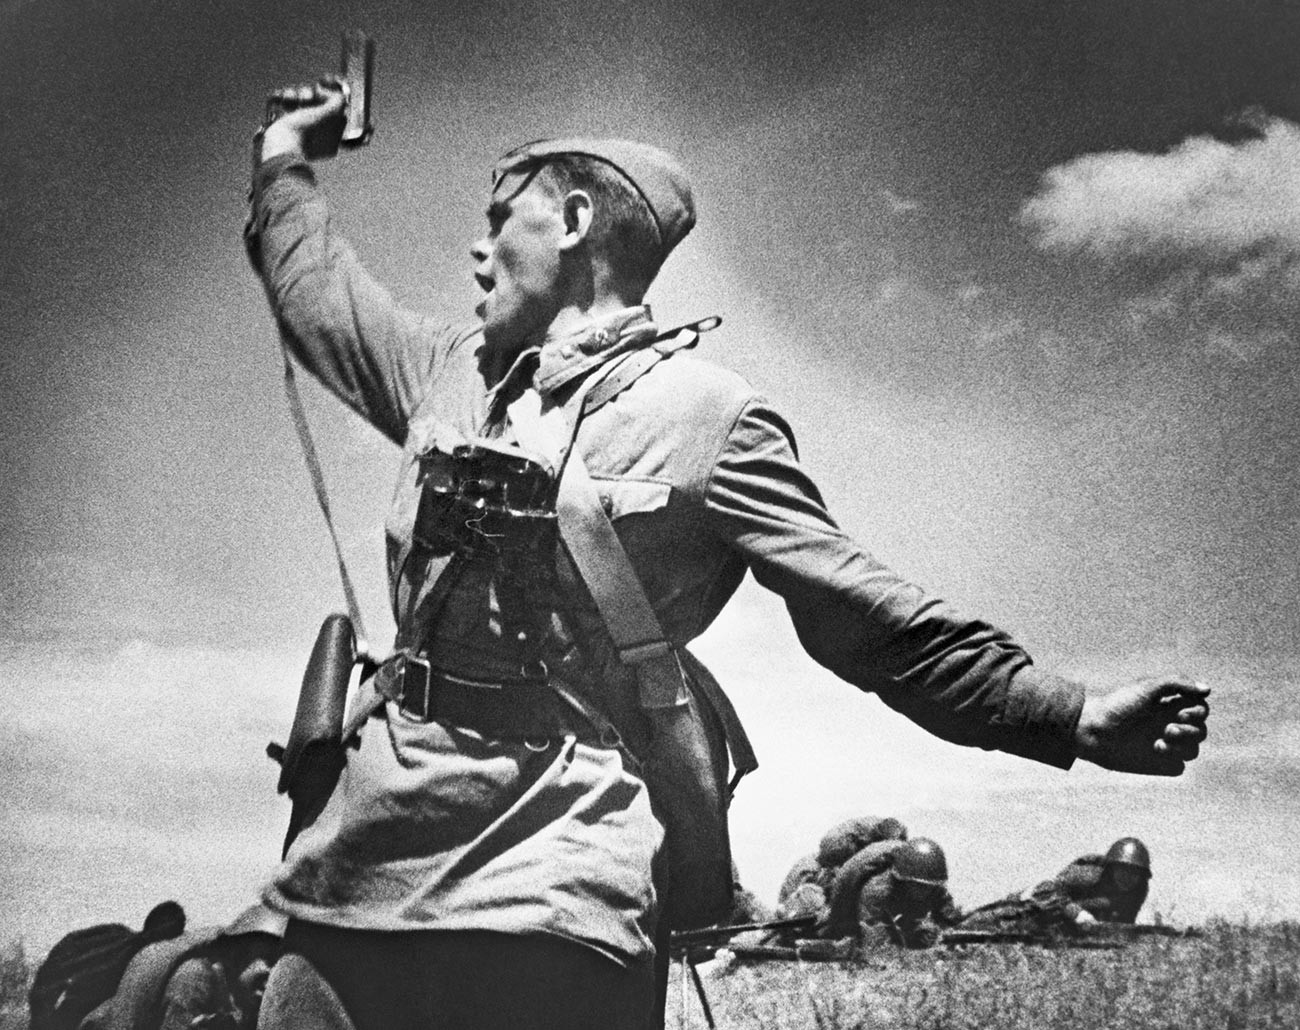 ウクライナのドイツ軍陣地に対する戦闘に兵士らを導く政治将校アレクセイ・エレメンコ。1942年7月12日。彼はこの写真が撮られた数分後に戦死した。